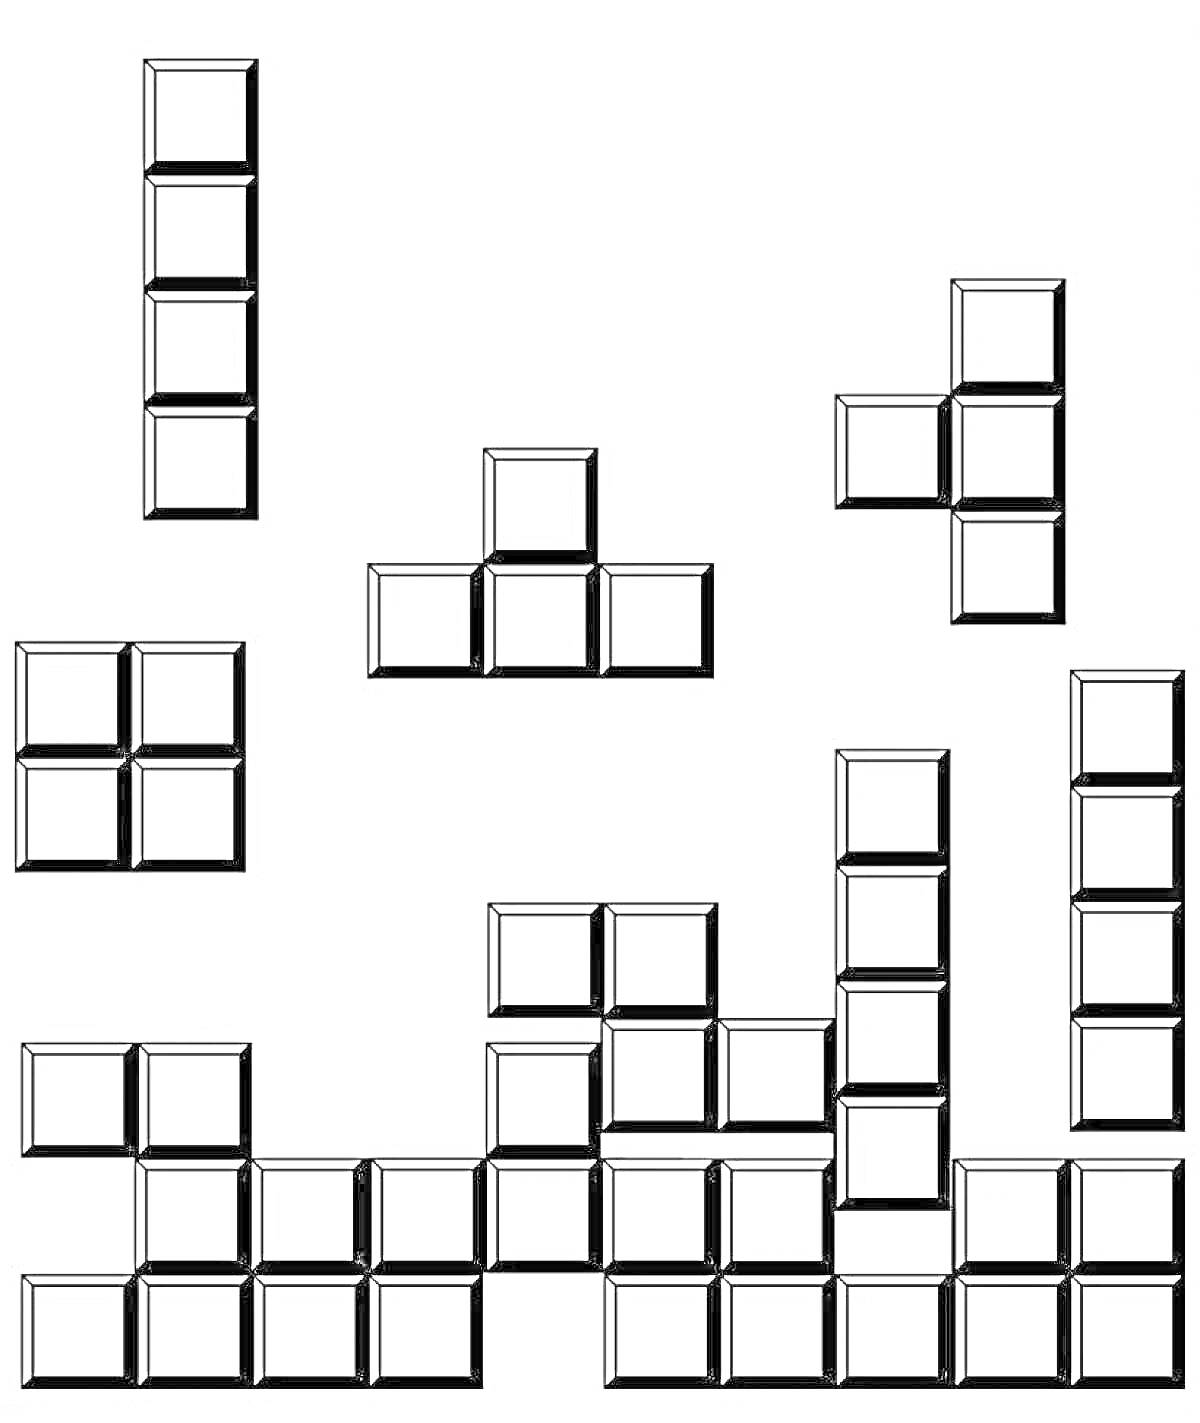 Раскраска - Тетрис с различными фигурами: палка, квадрат, L-образные и T-образные фигуры